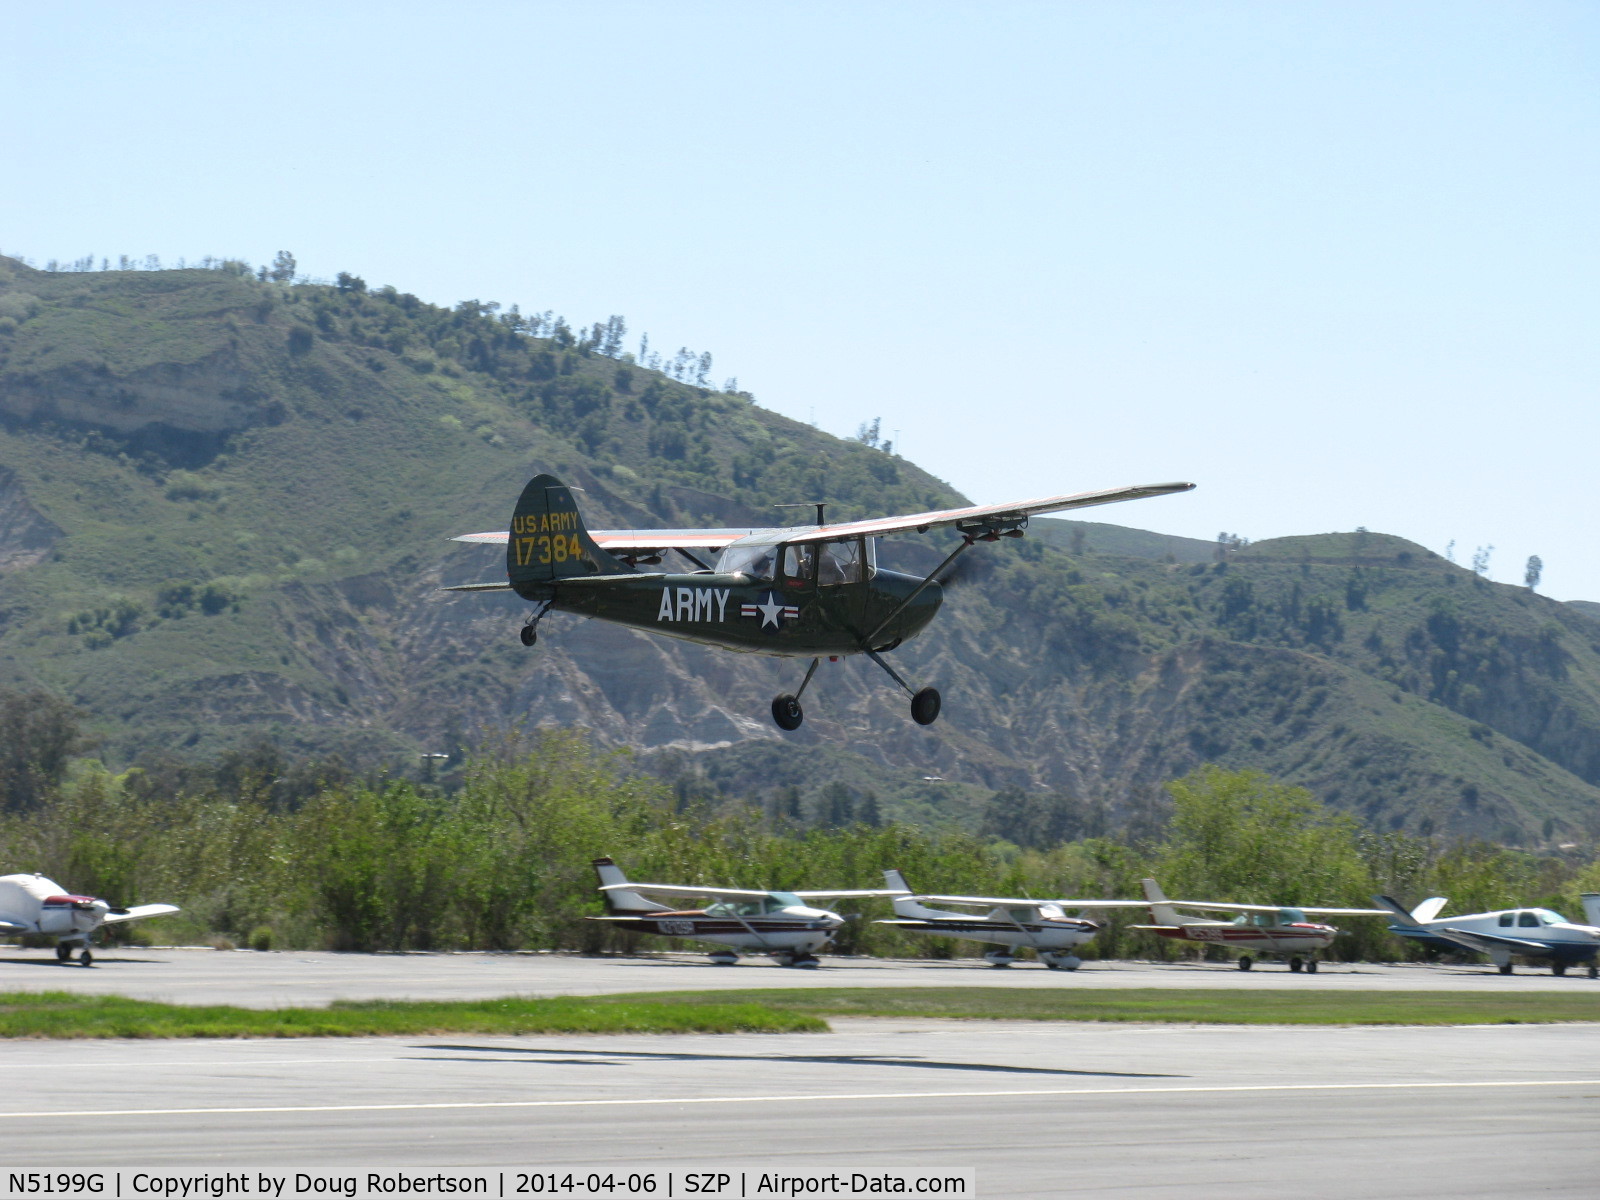 N5199G, 1953 Cessna 305A C/N 22118, 1953 Cessna 305A O-1 BIRD DOG, Continental O-470-11 213 Hp, takeoff climb Rwy 22